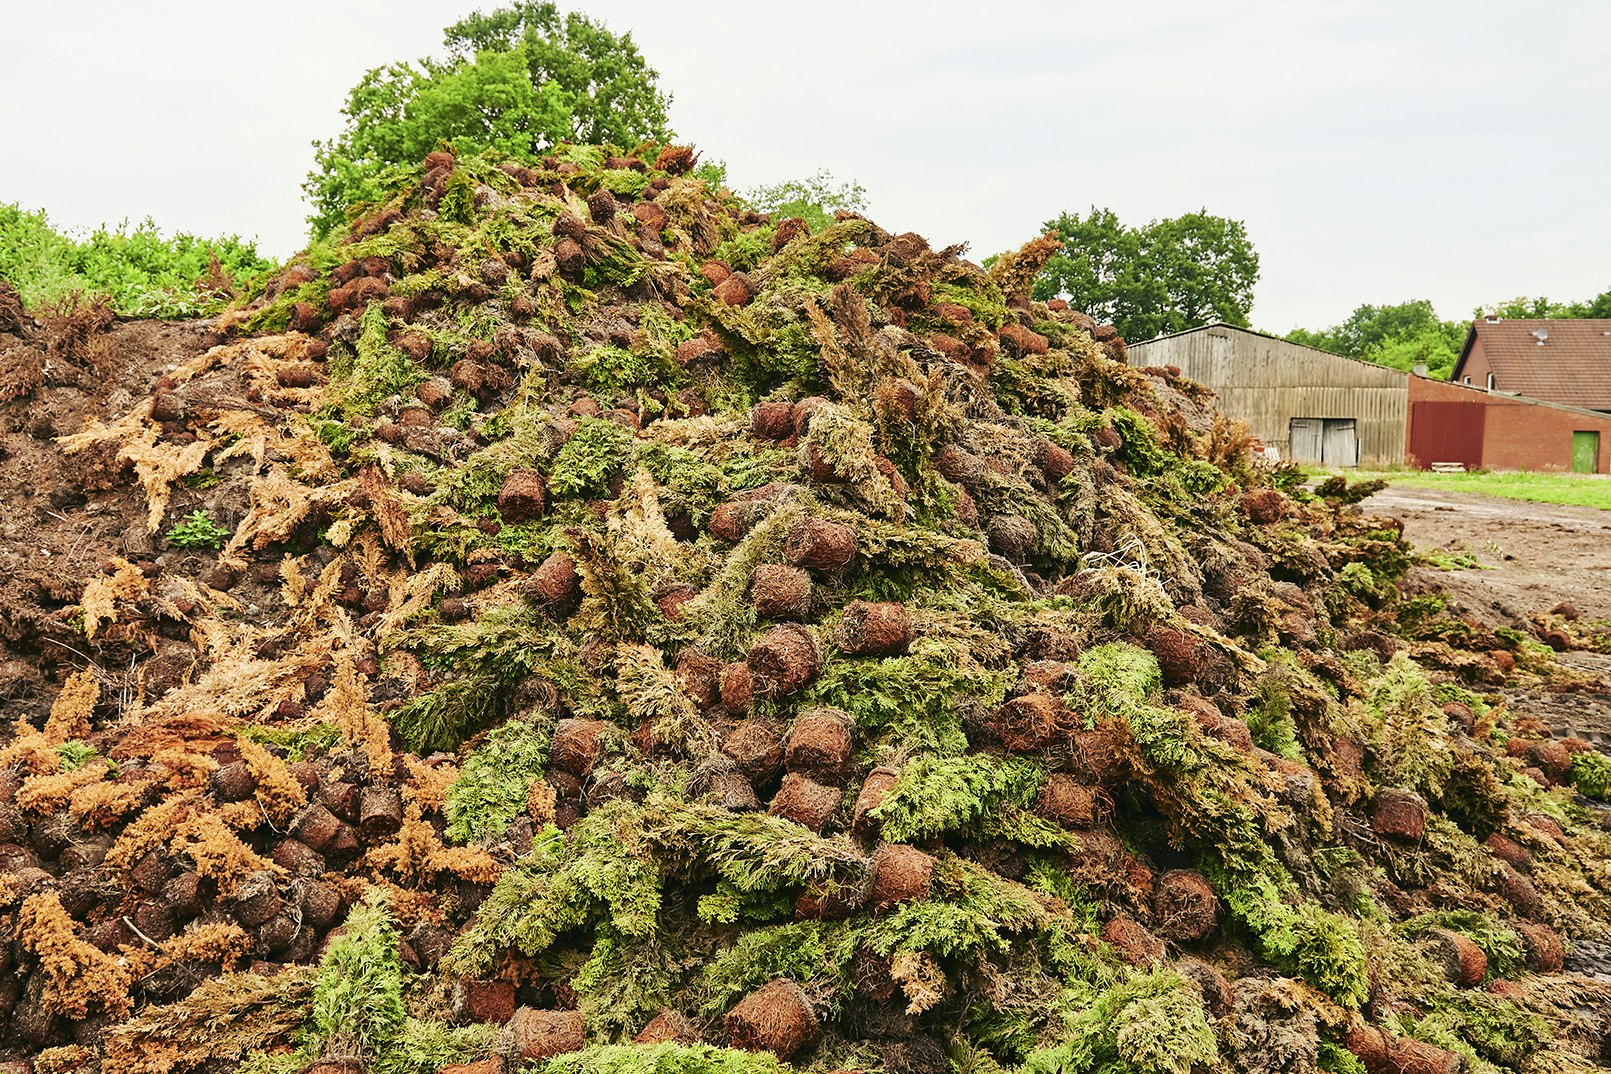 Der „Covid-19-Komposthaufen" der Baumschule Schlangen: sechs Meter hoch, 40 Meter lang und 1,4 Millionen Euro teuer.  Foto: © Foto- und Bilderwerk - <a href="http://www.bilderwerk.org/">www.bilderwerk.org</a>